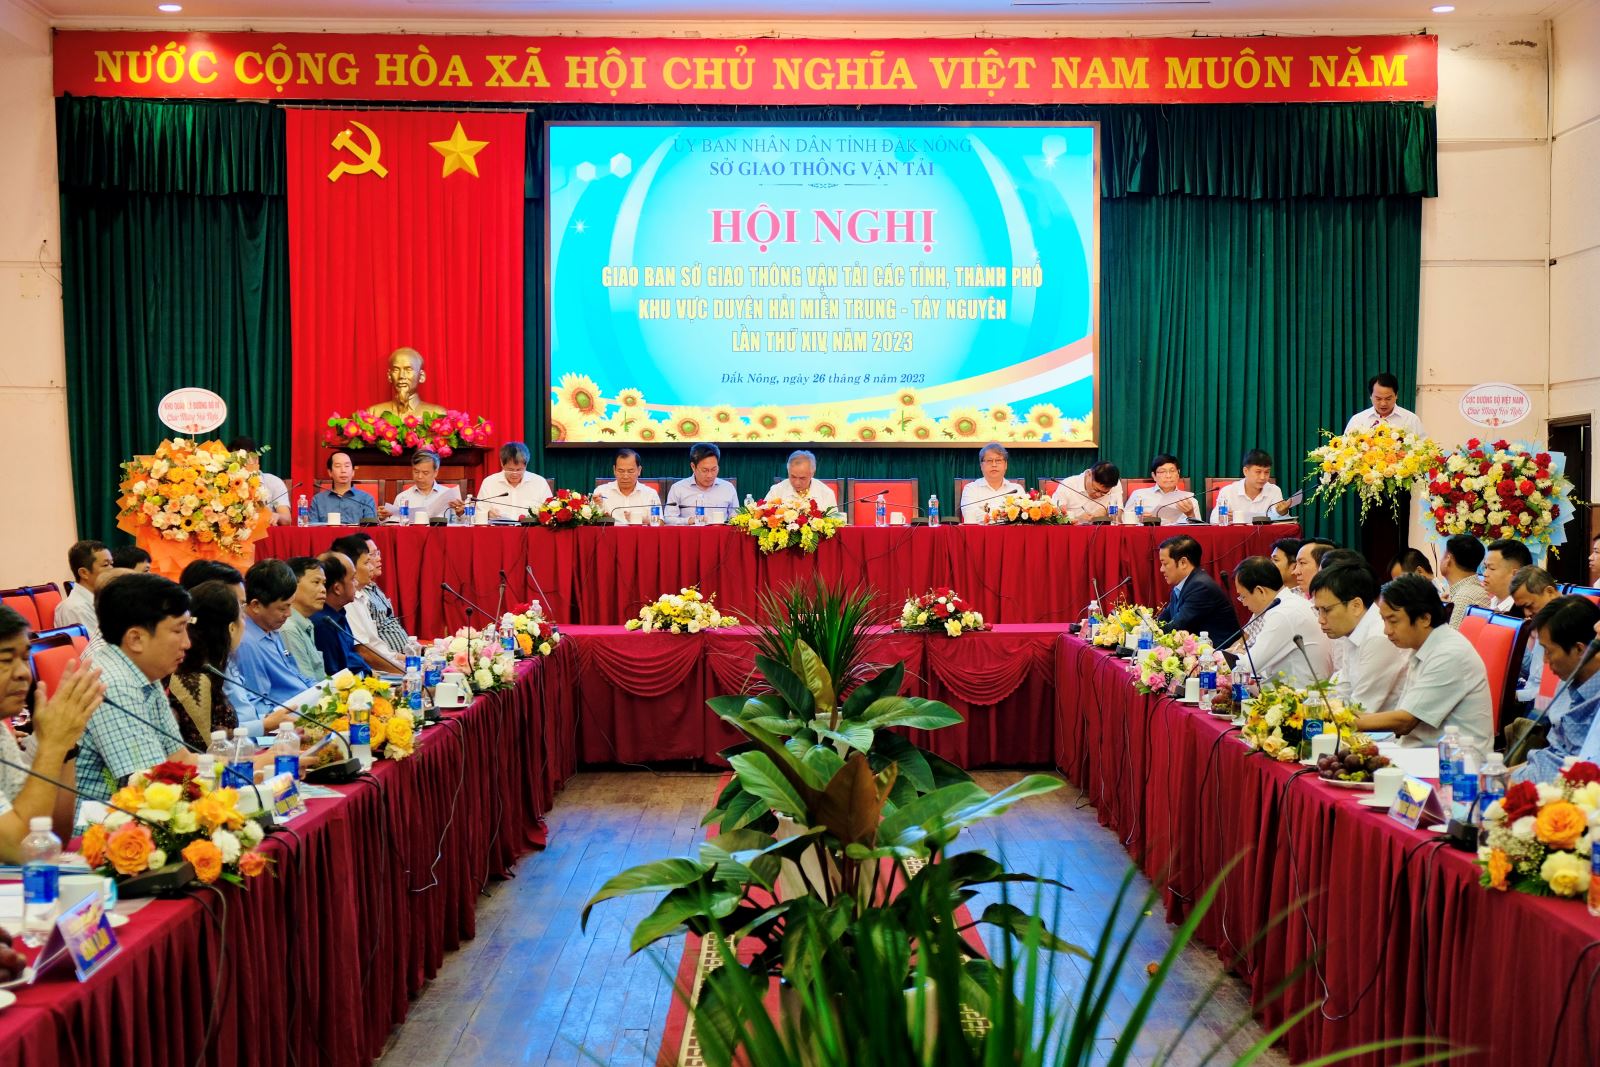 Sở Giao thông vận tải Kon Tum tham dự Hội nghị giao ban Sở Giao thông vận tải các tỉnh, thành phố khu vực duyên hải miền Trung - Tây Nguyên lần thứ XIV năm 2023